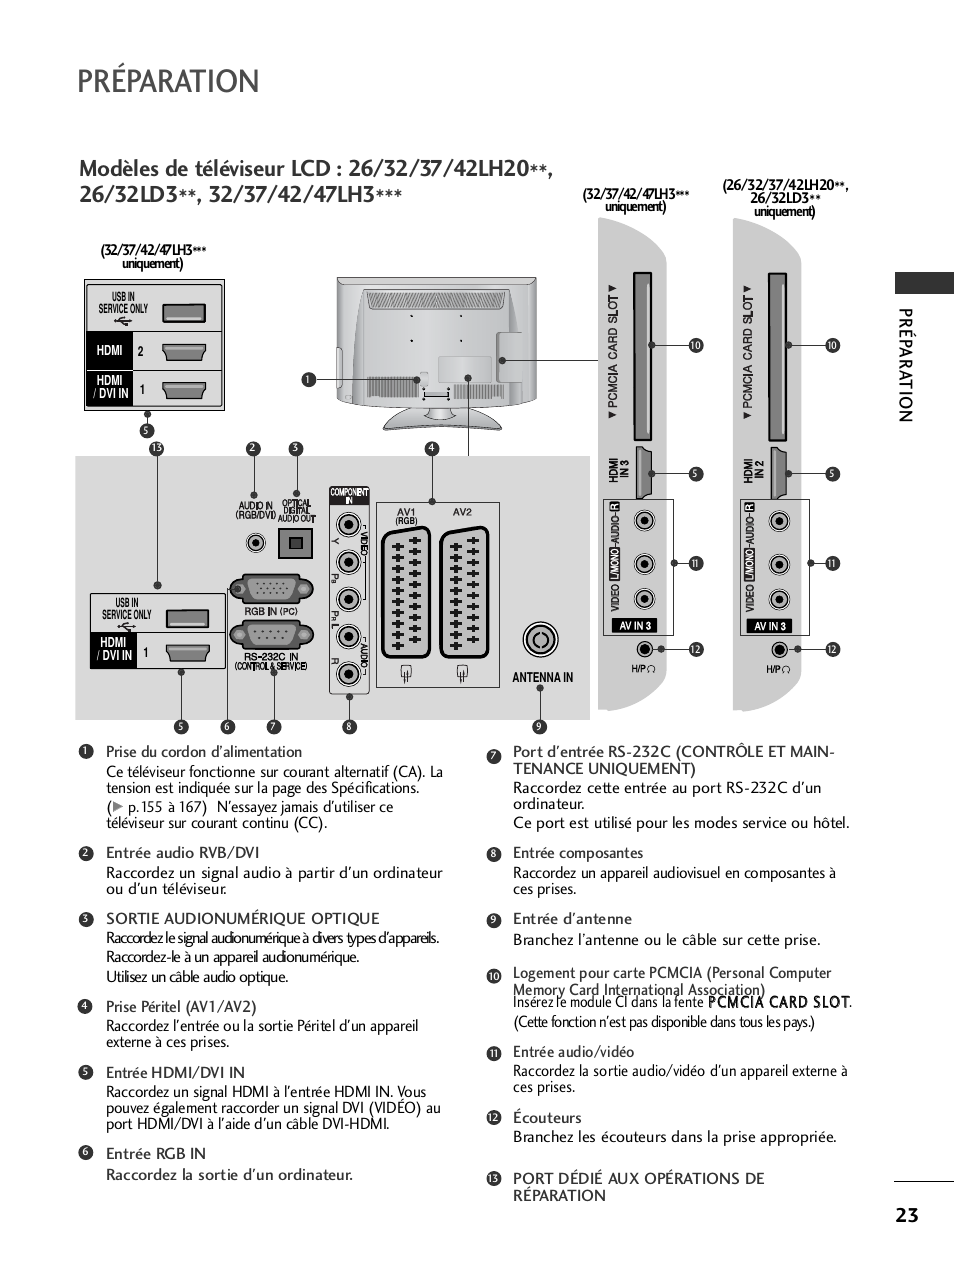 Préparation, Prép ar a tion | LG 32LH40 Manuel d'utilisation | Page 25 / 180